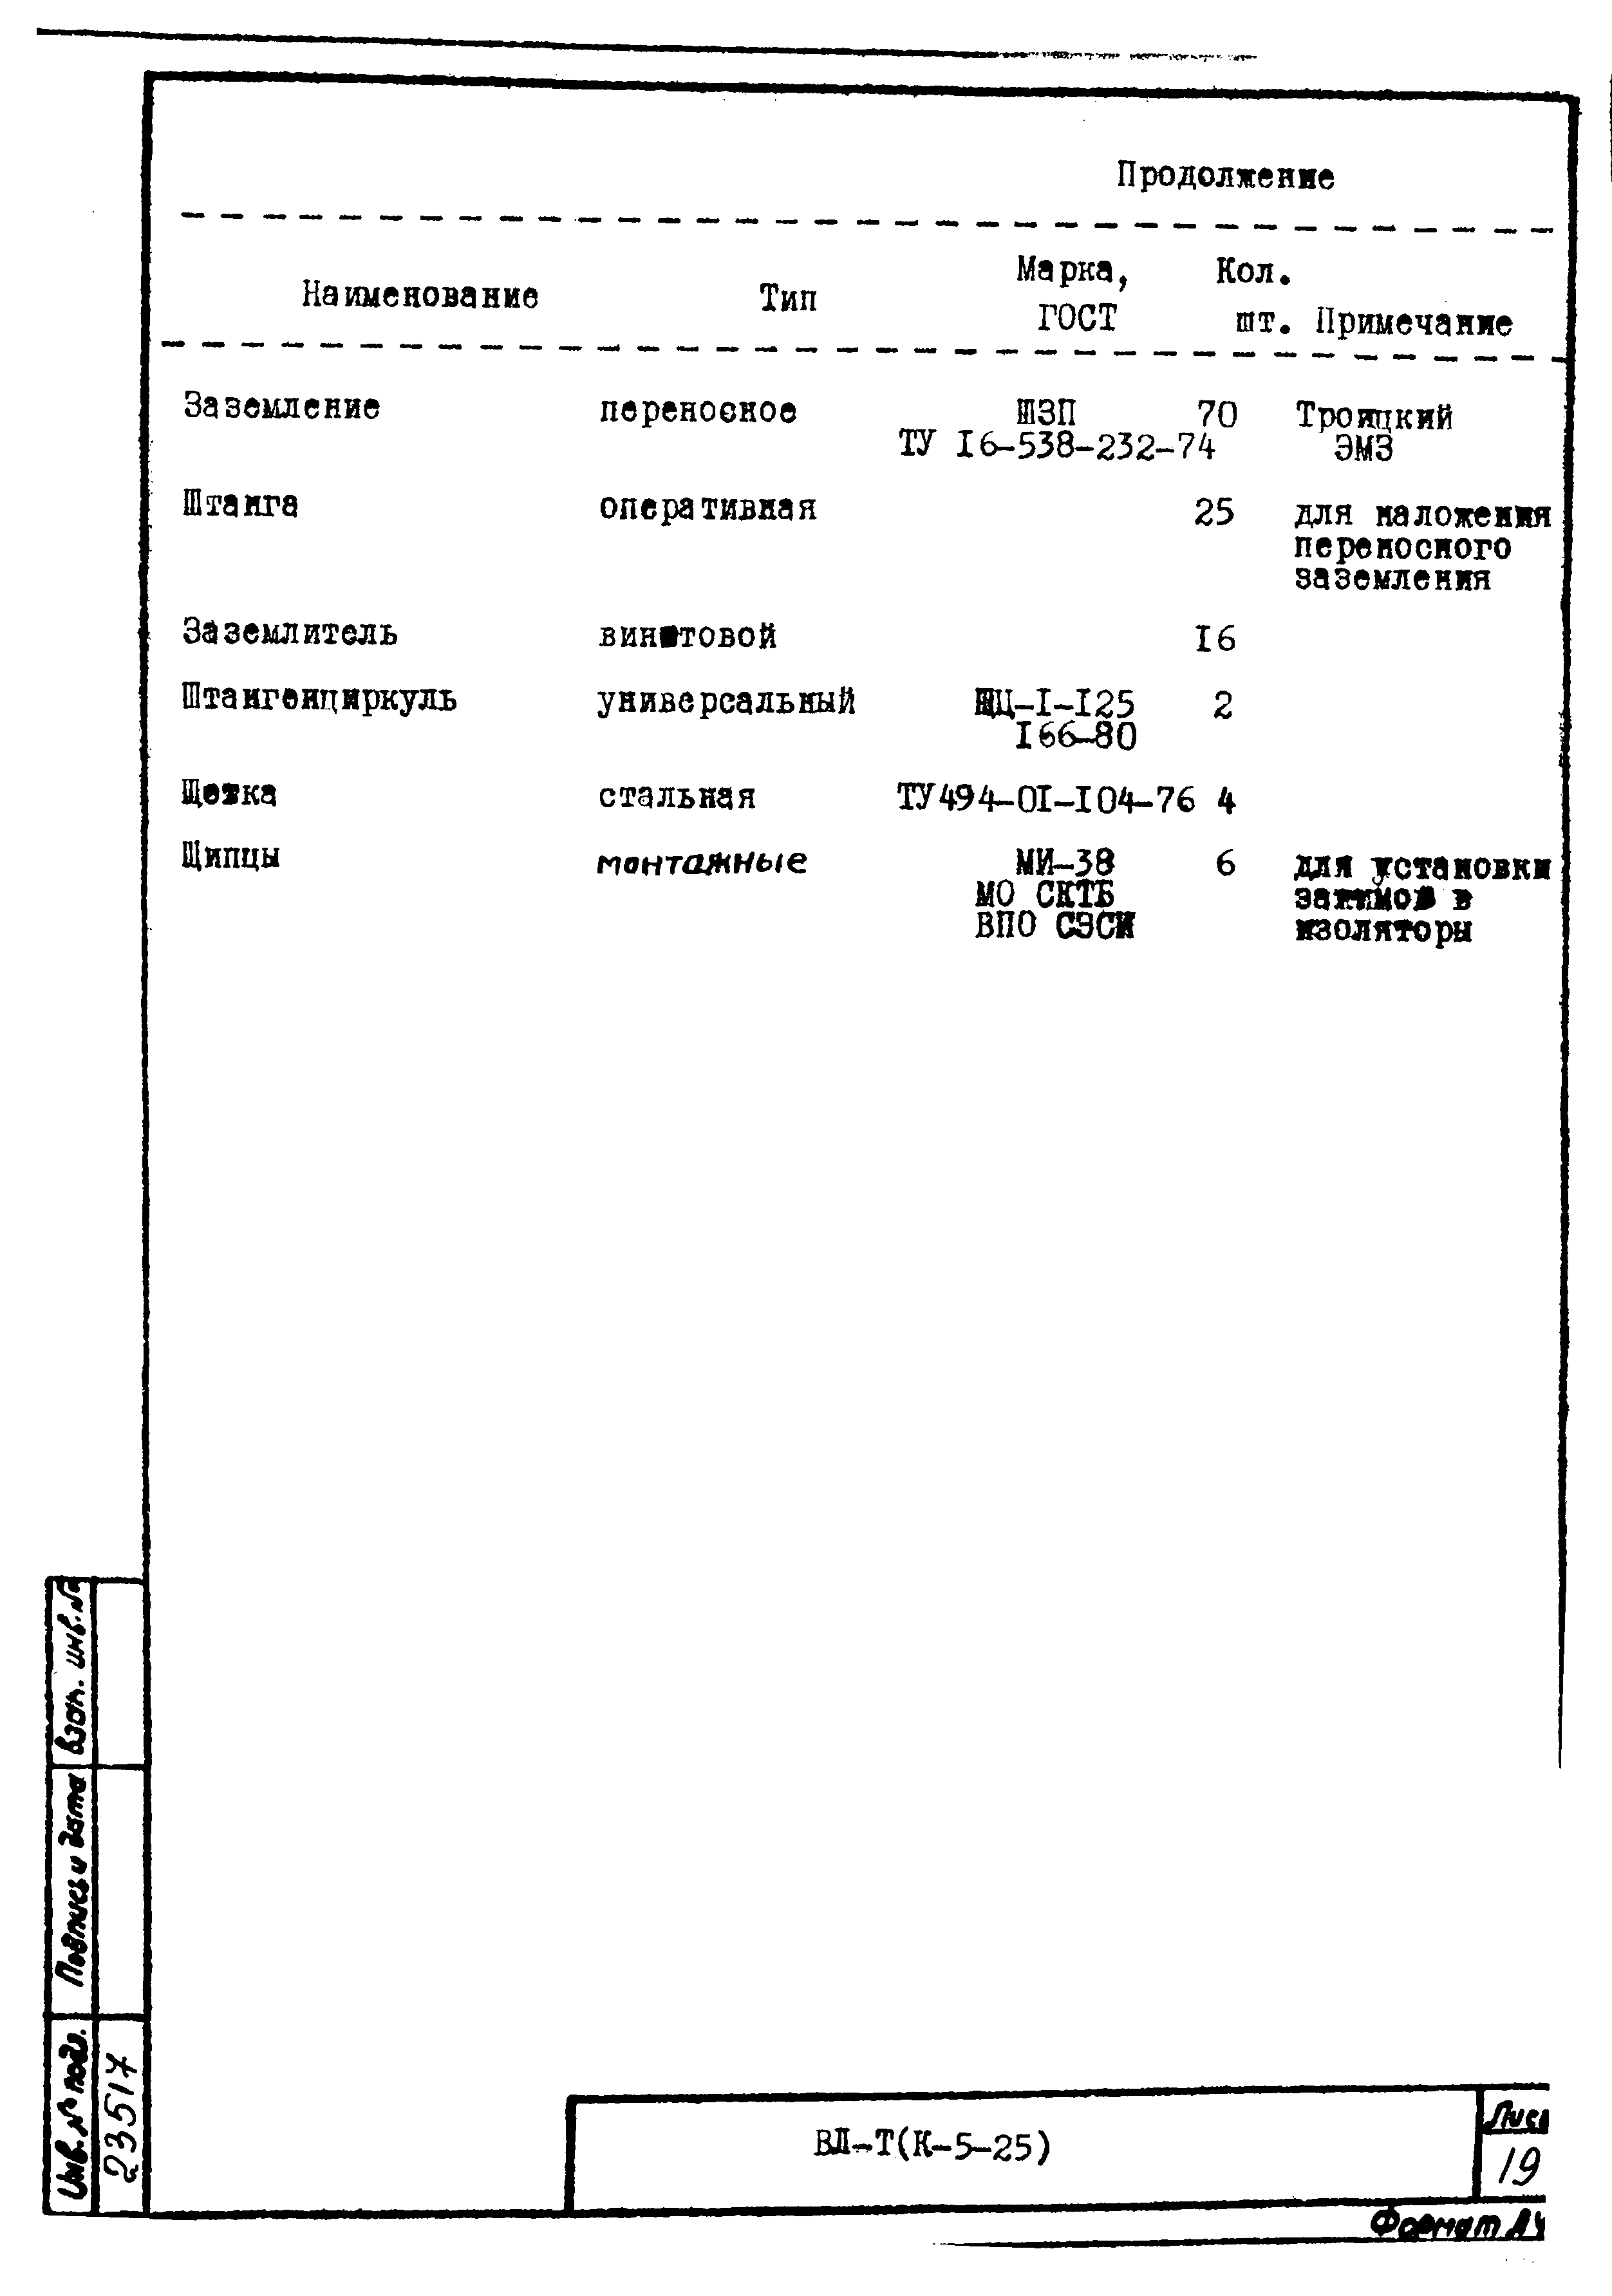 Технологическая карта К-5-25-25